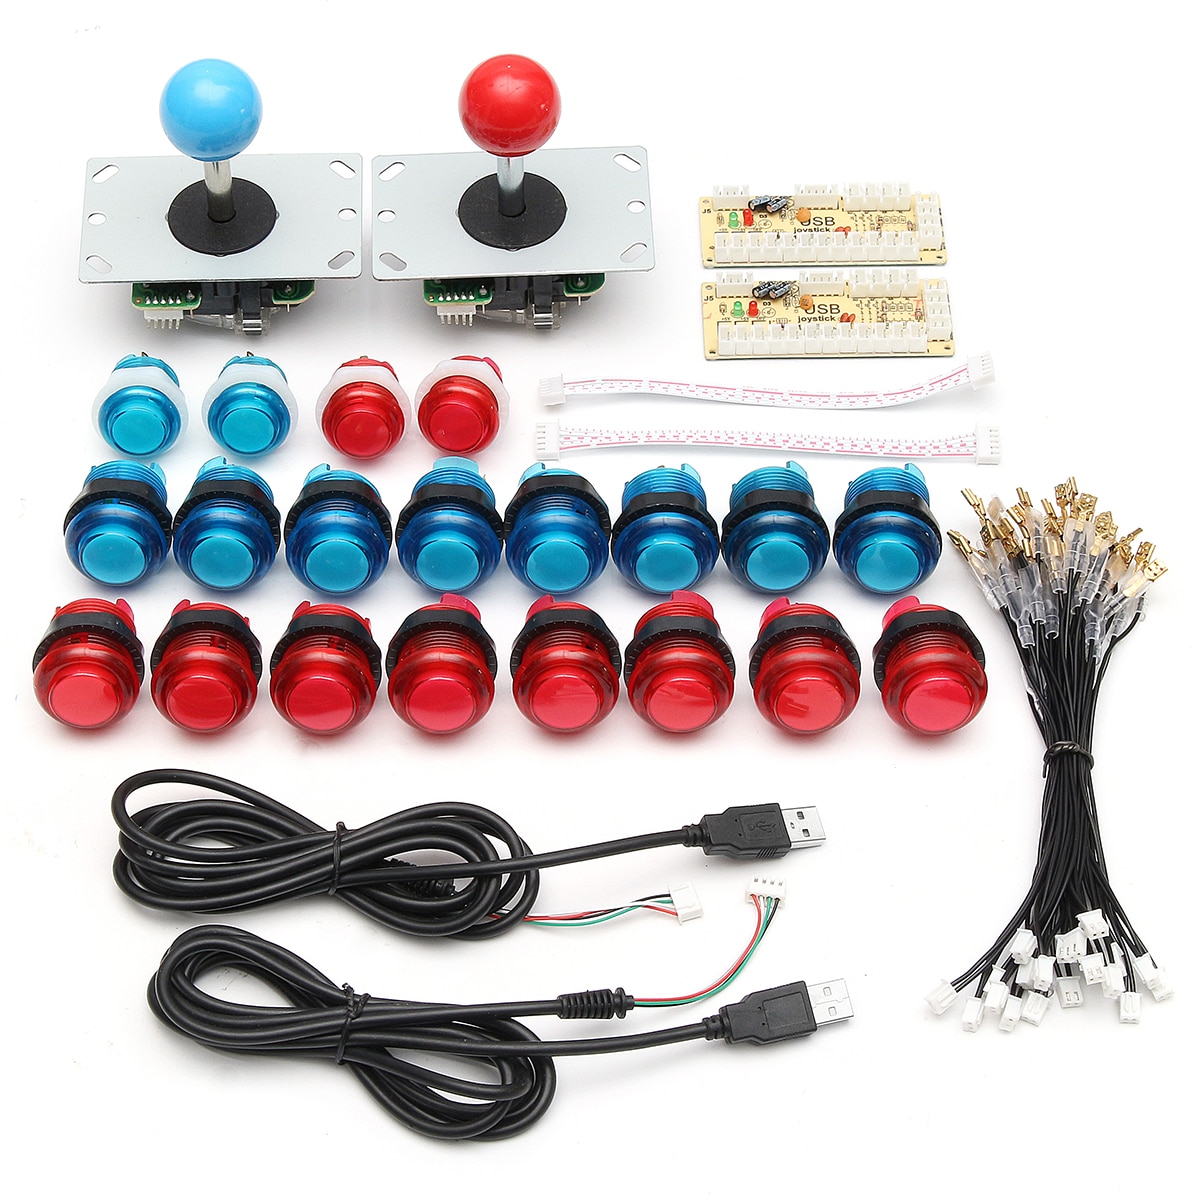 Diy Joystick Arcade Kits 2 Spelers Met 20 Led Arcade Knoppen + 2 Joysticks + 2 Usb Encoder Kit + kabels Arcade Game Onderdelen Set